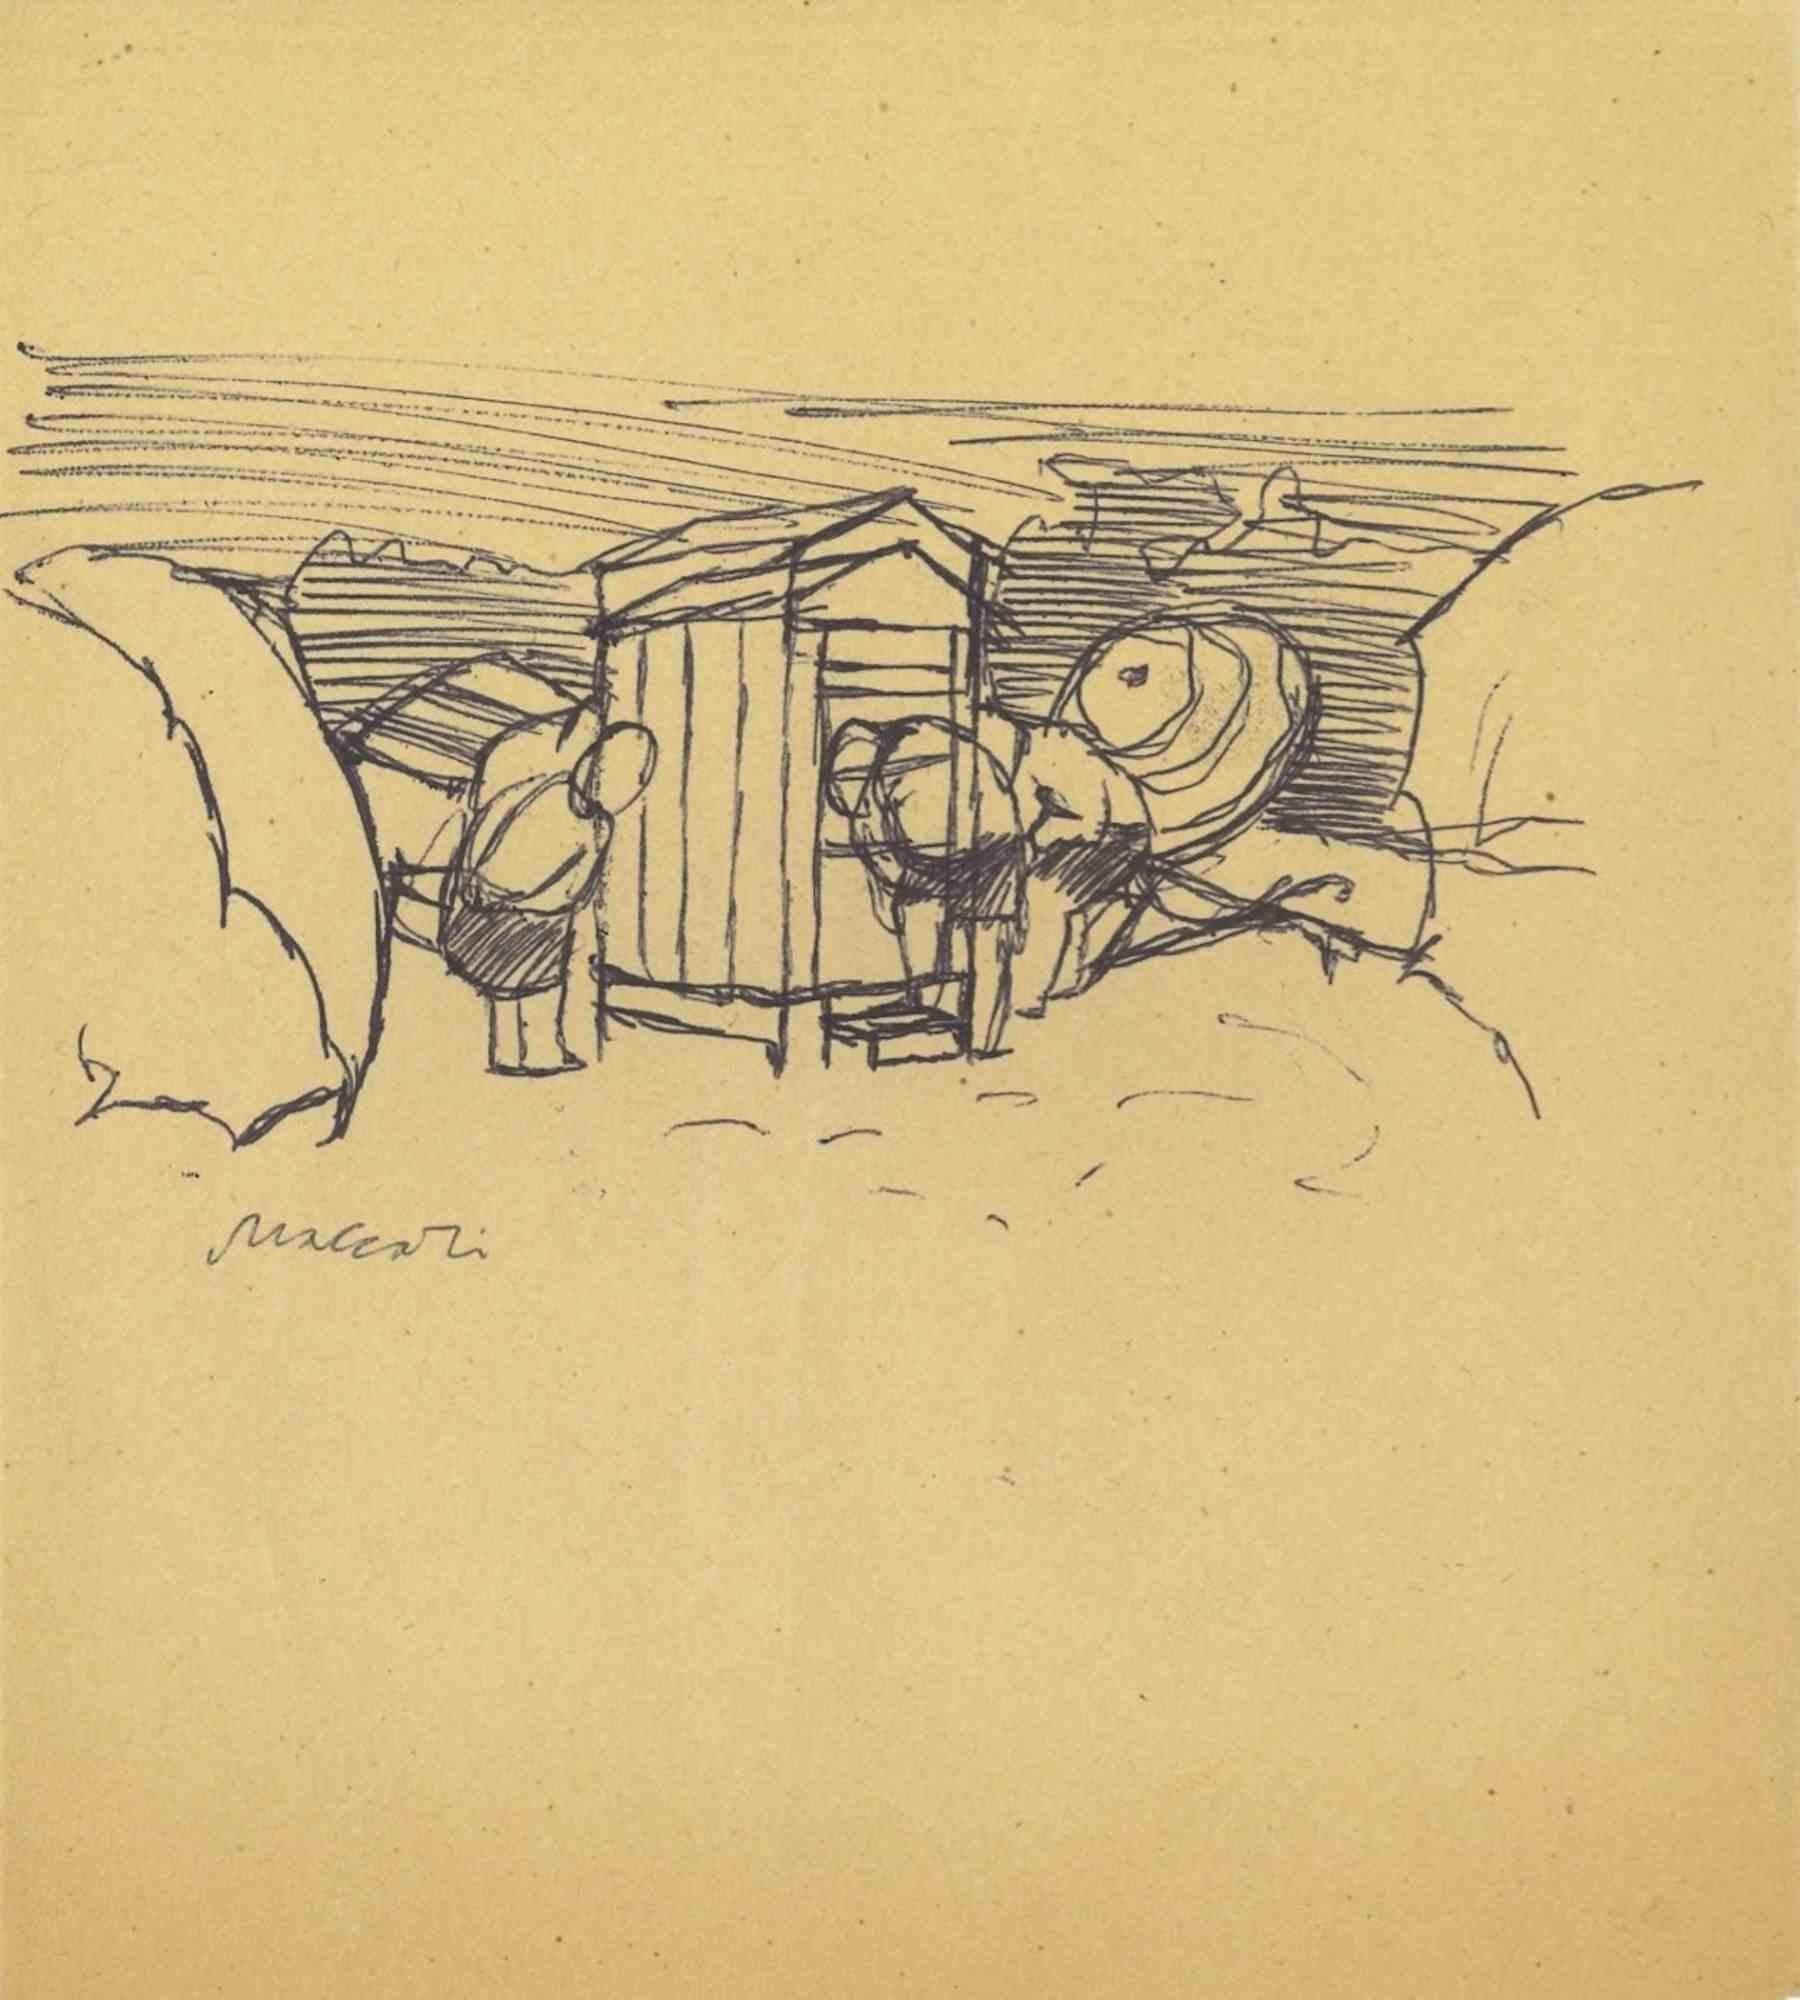 Village est un dessin à la plume réalisé par Mino Maccari (1924-1989) au milieu du 20e siècle.

Signé à la main.

Bon état avec de légères rousseurs.

Mino Maccari (Sienne, 1924-Rome, 16 juin 1989) est un écrivain, peintre, graveur et journaliste